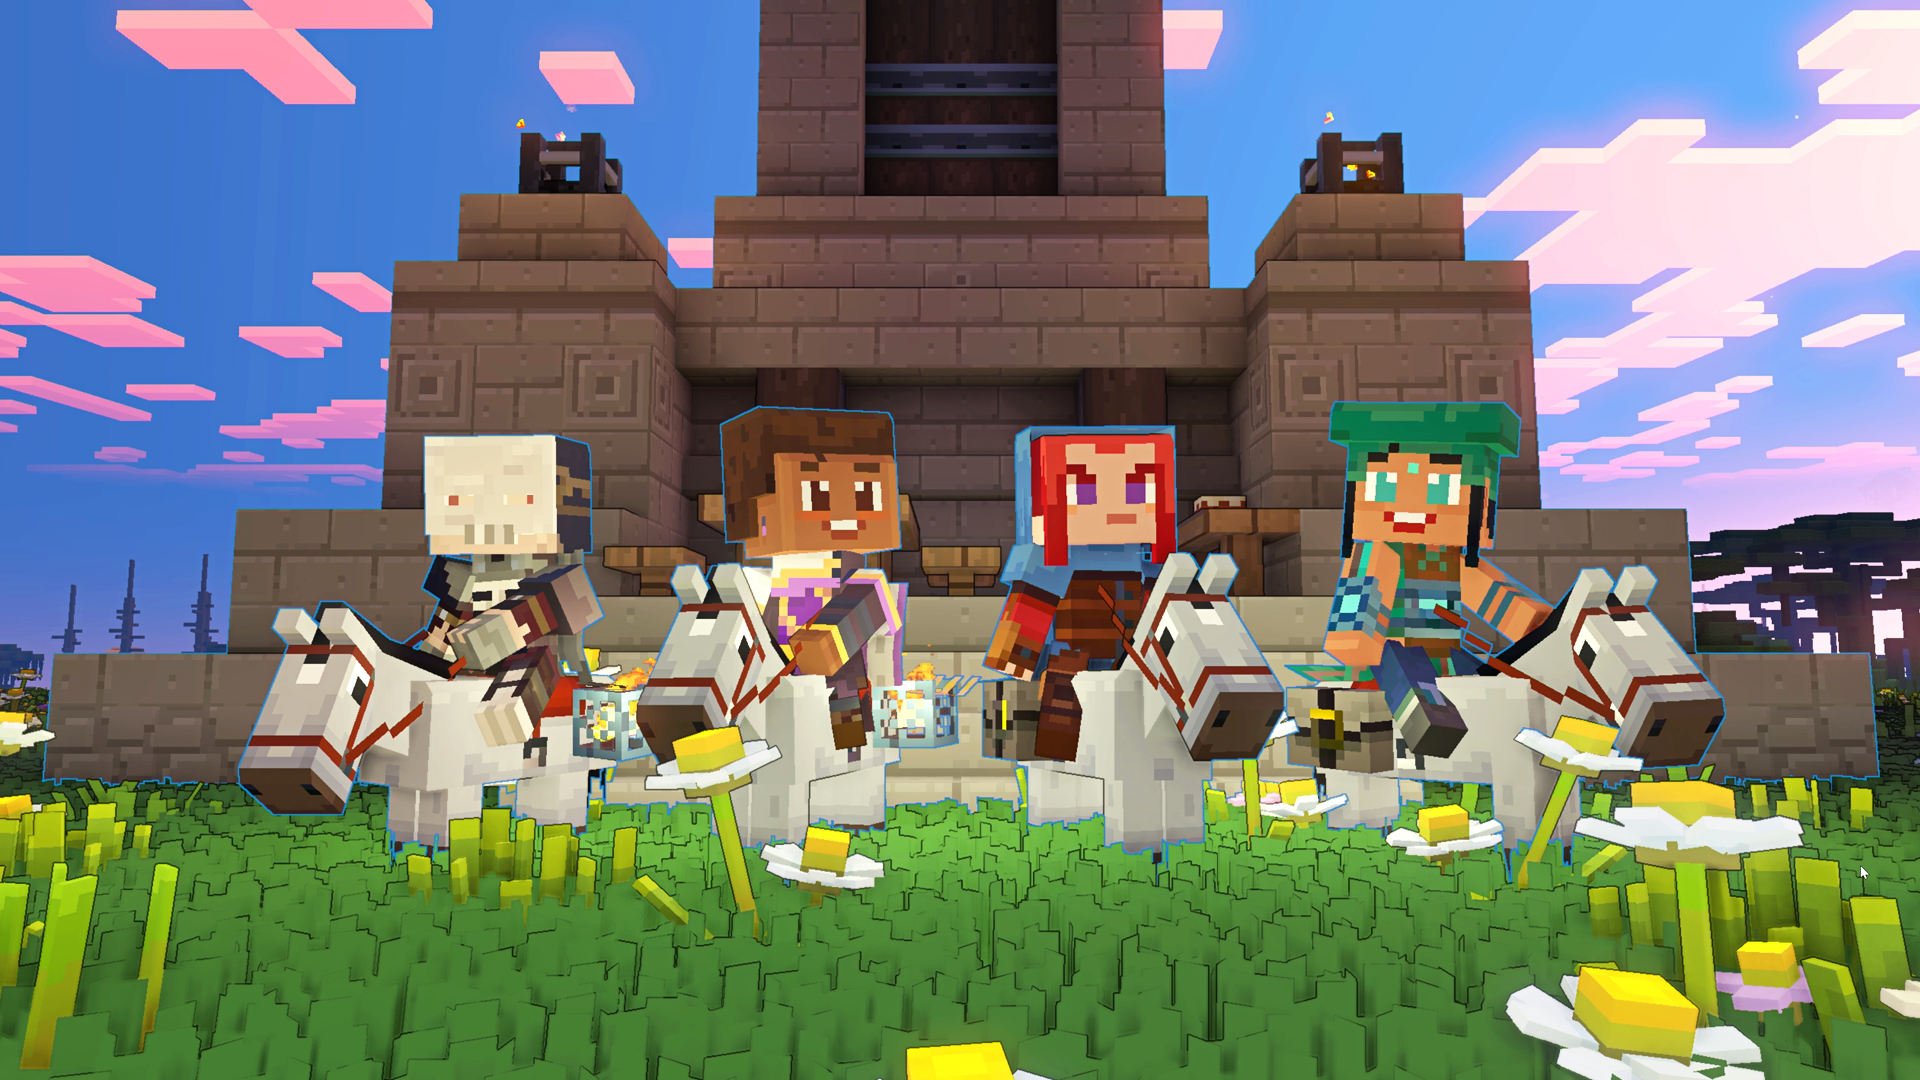 Jogos como Minecraft podem estimular a criatividade, aponta estudo